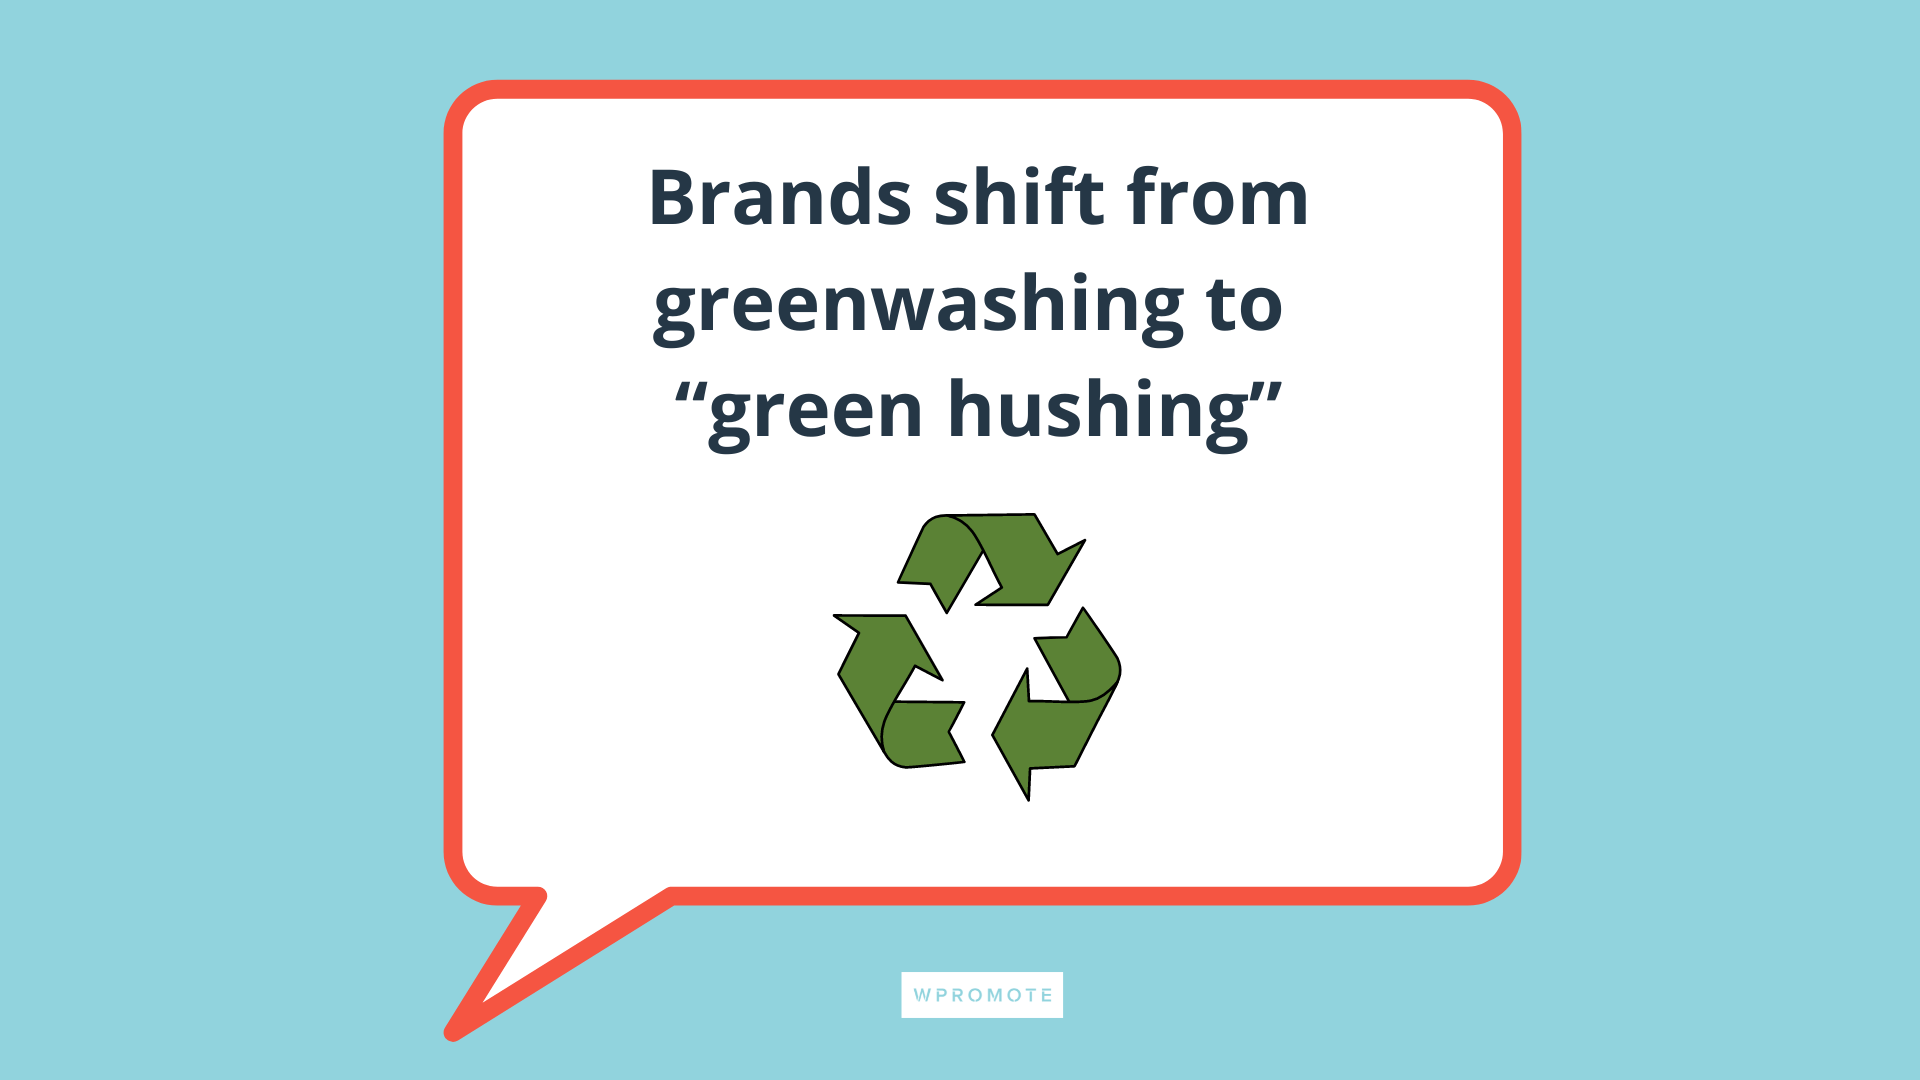 Les marques passent du greenwashing au green hushing